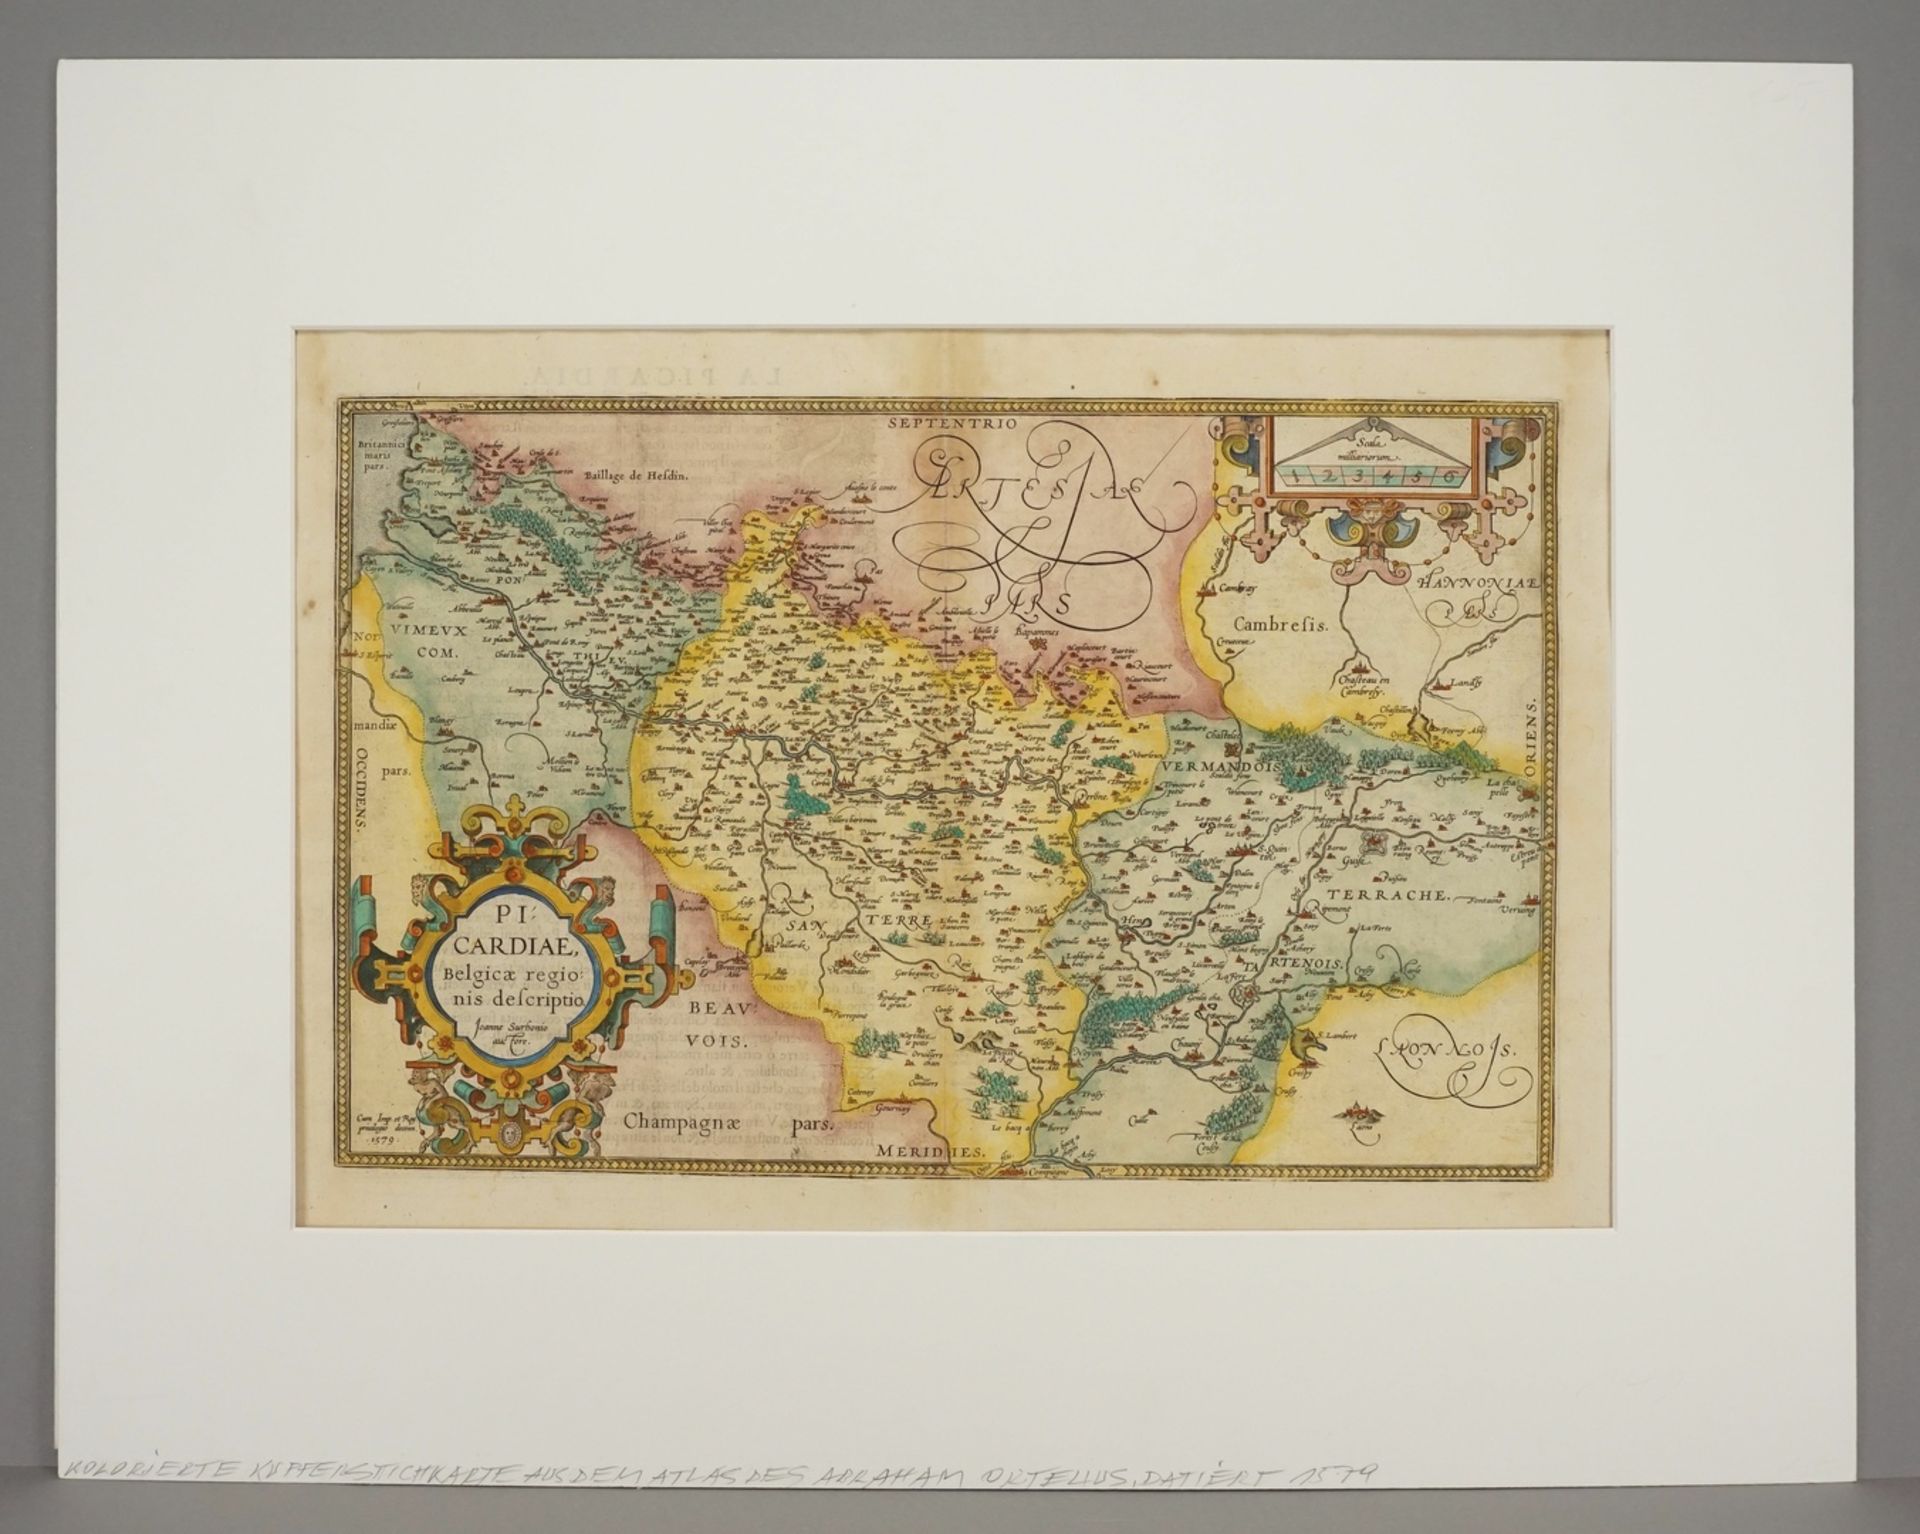 Abraham Ortelius, ""Picardiae, Belgicae regionis descriptio" (Karte der Picardie)" - Image 2 of 4